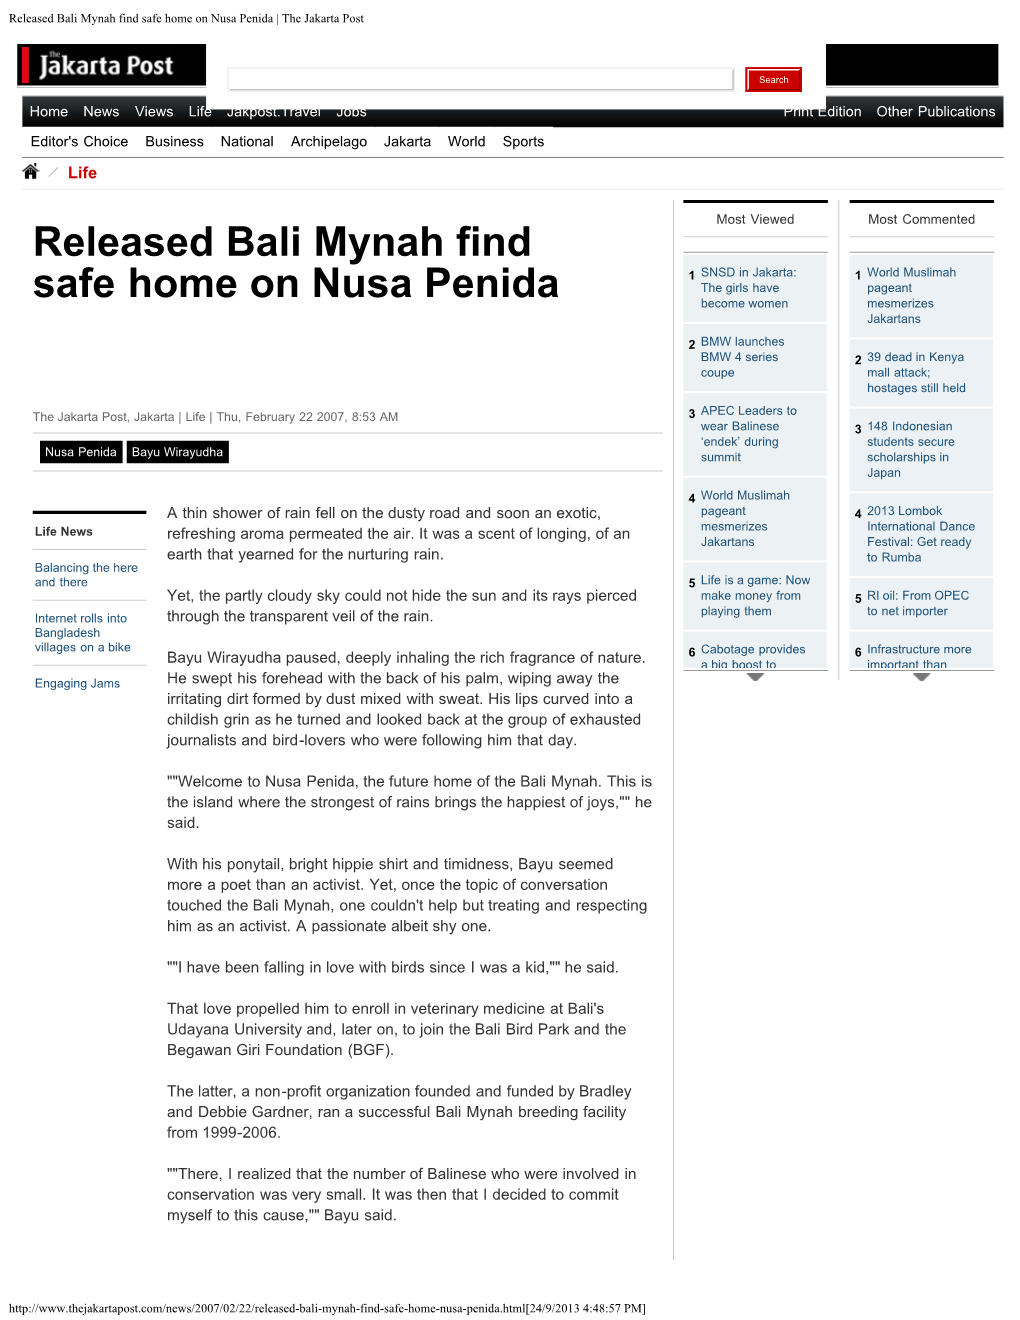 Released Bali Mynah Find Safe Home on Nusa Penida | the Jakarta Post